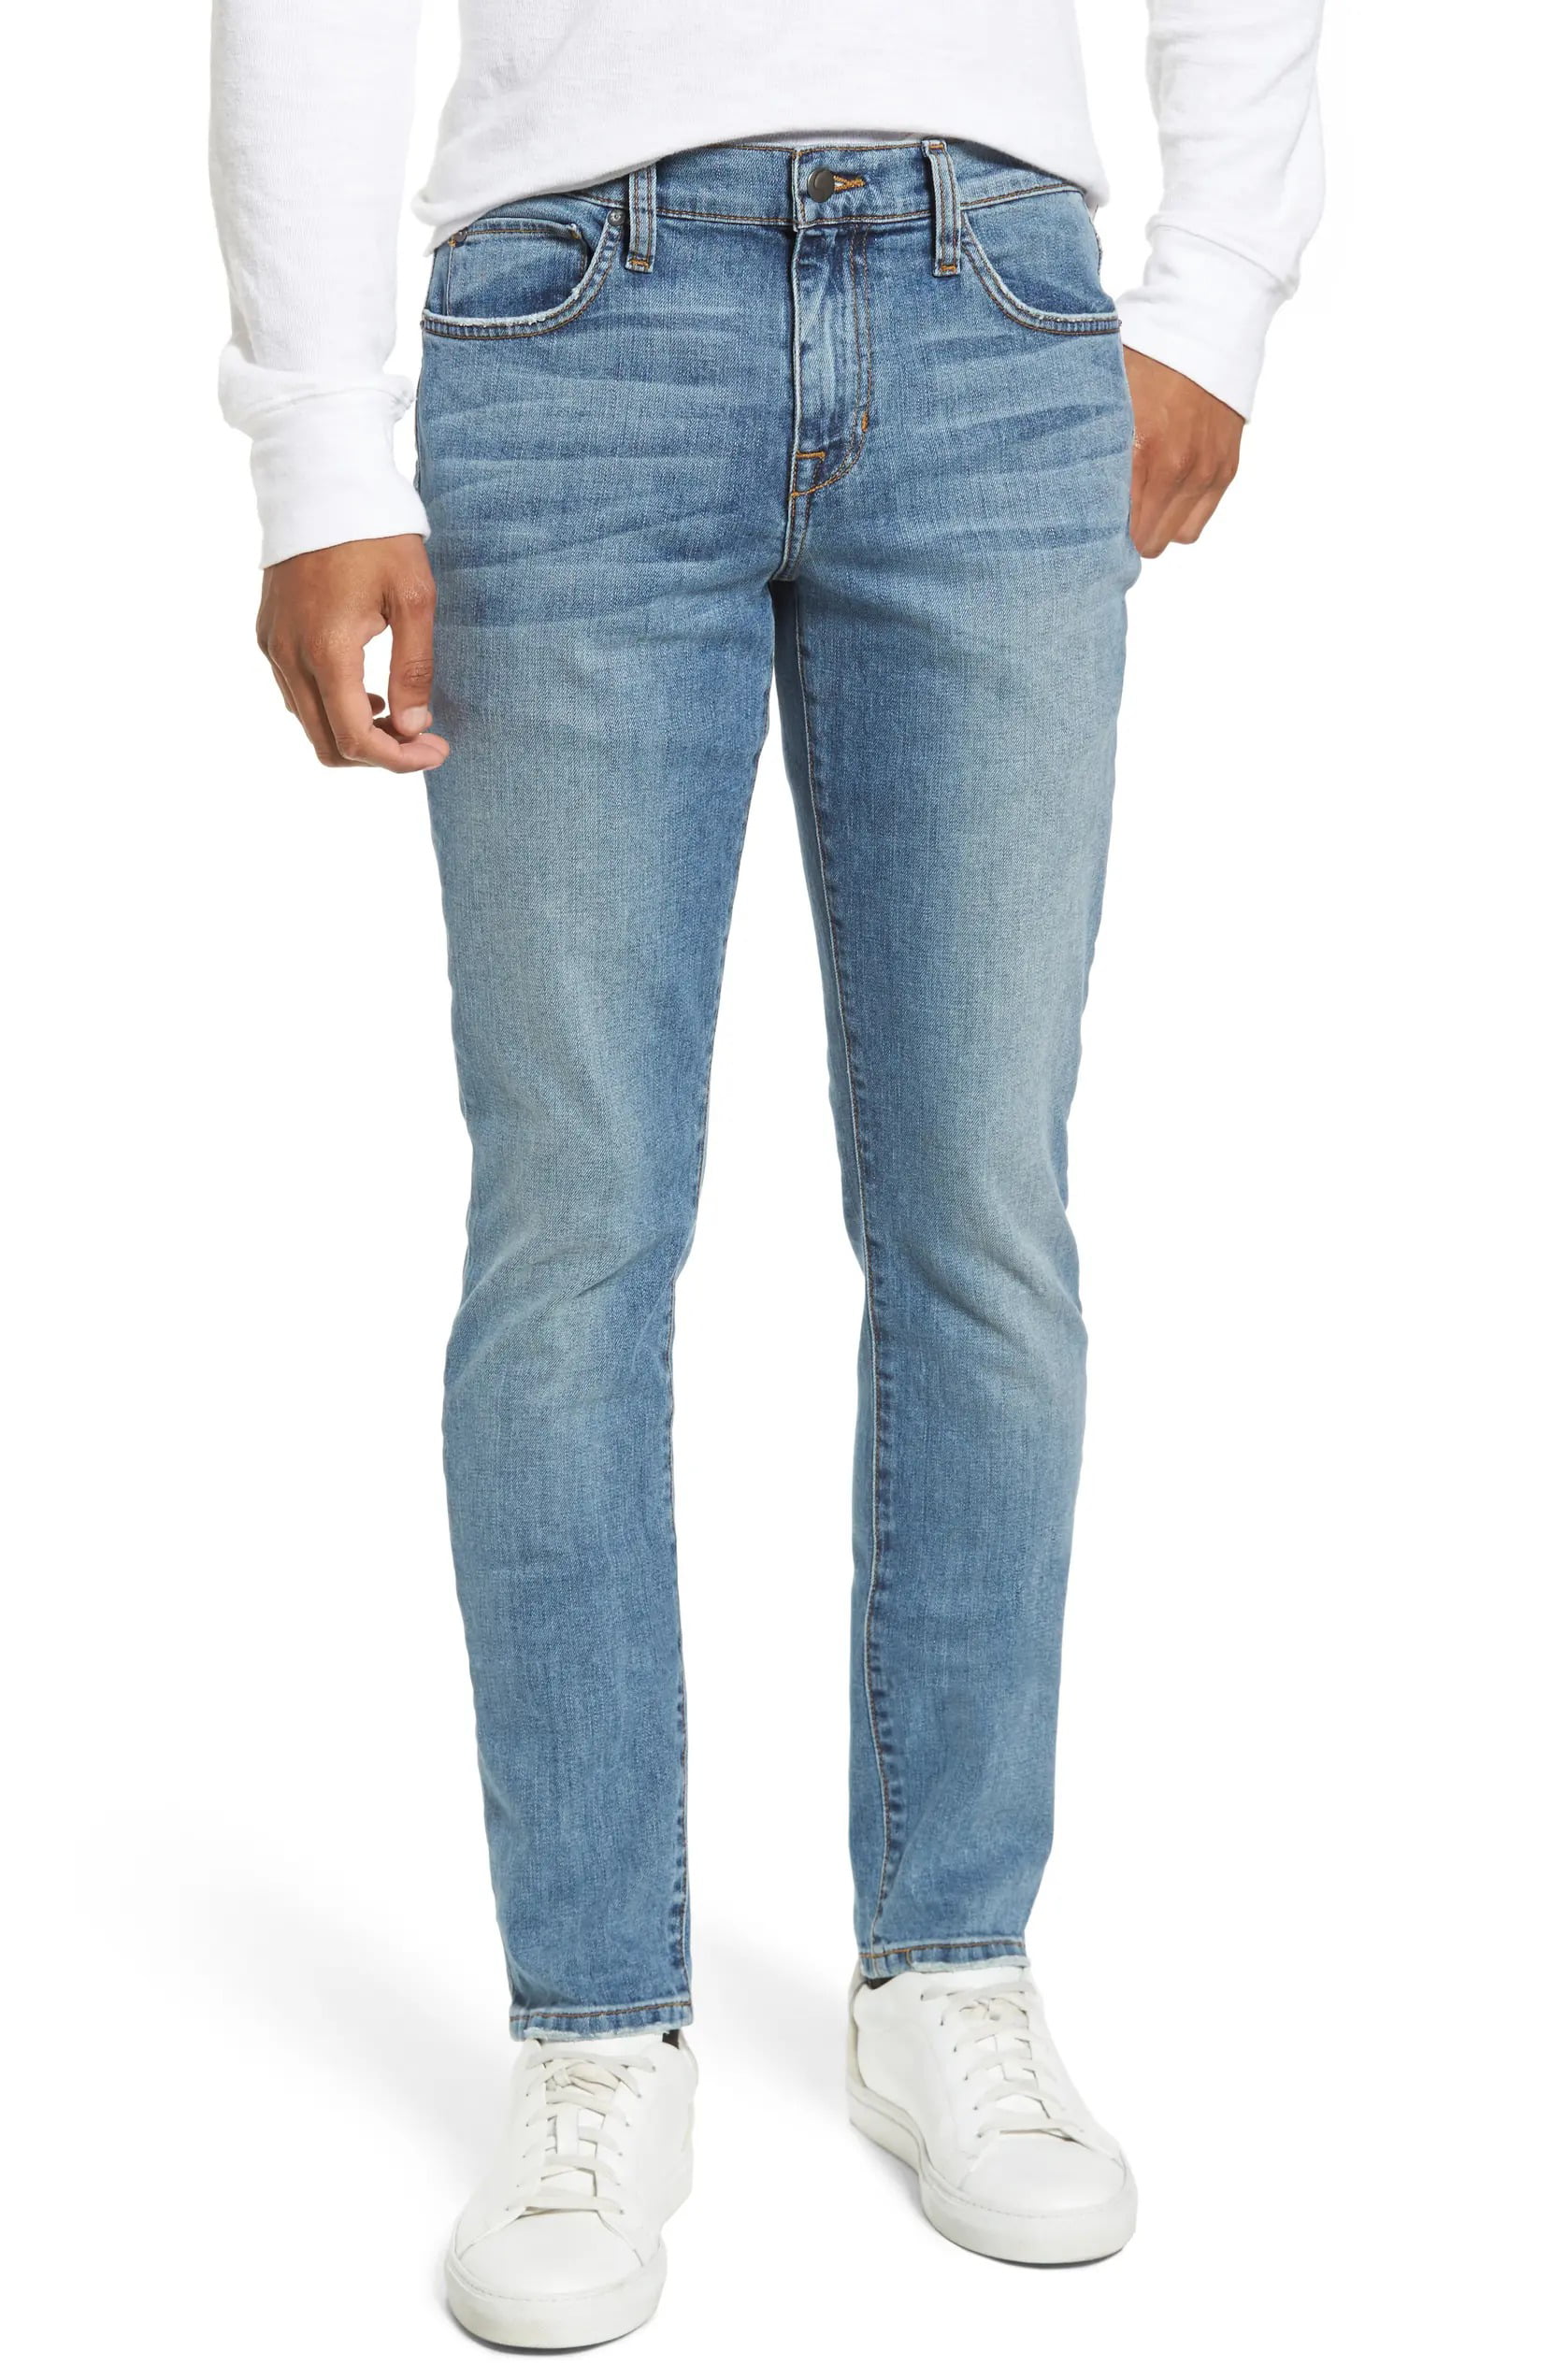 JOE'S Jeans - Mens Legend Skinny Jeans 34x32 Mid-Rise Slim Fit Denim 34 ...